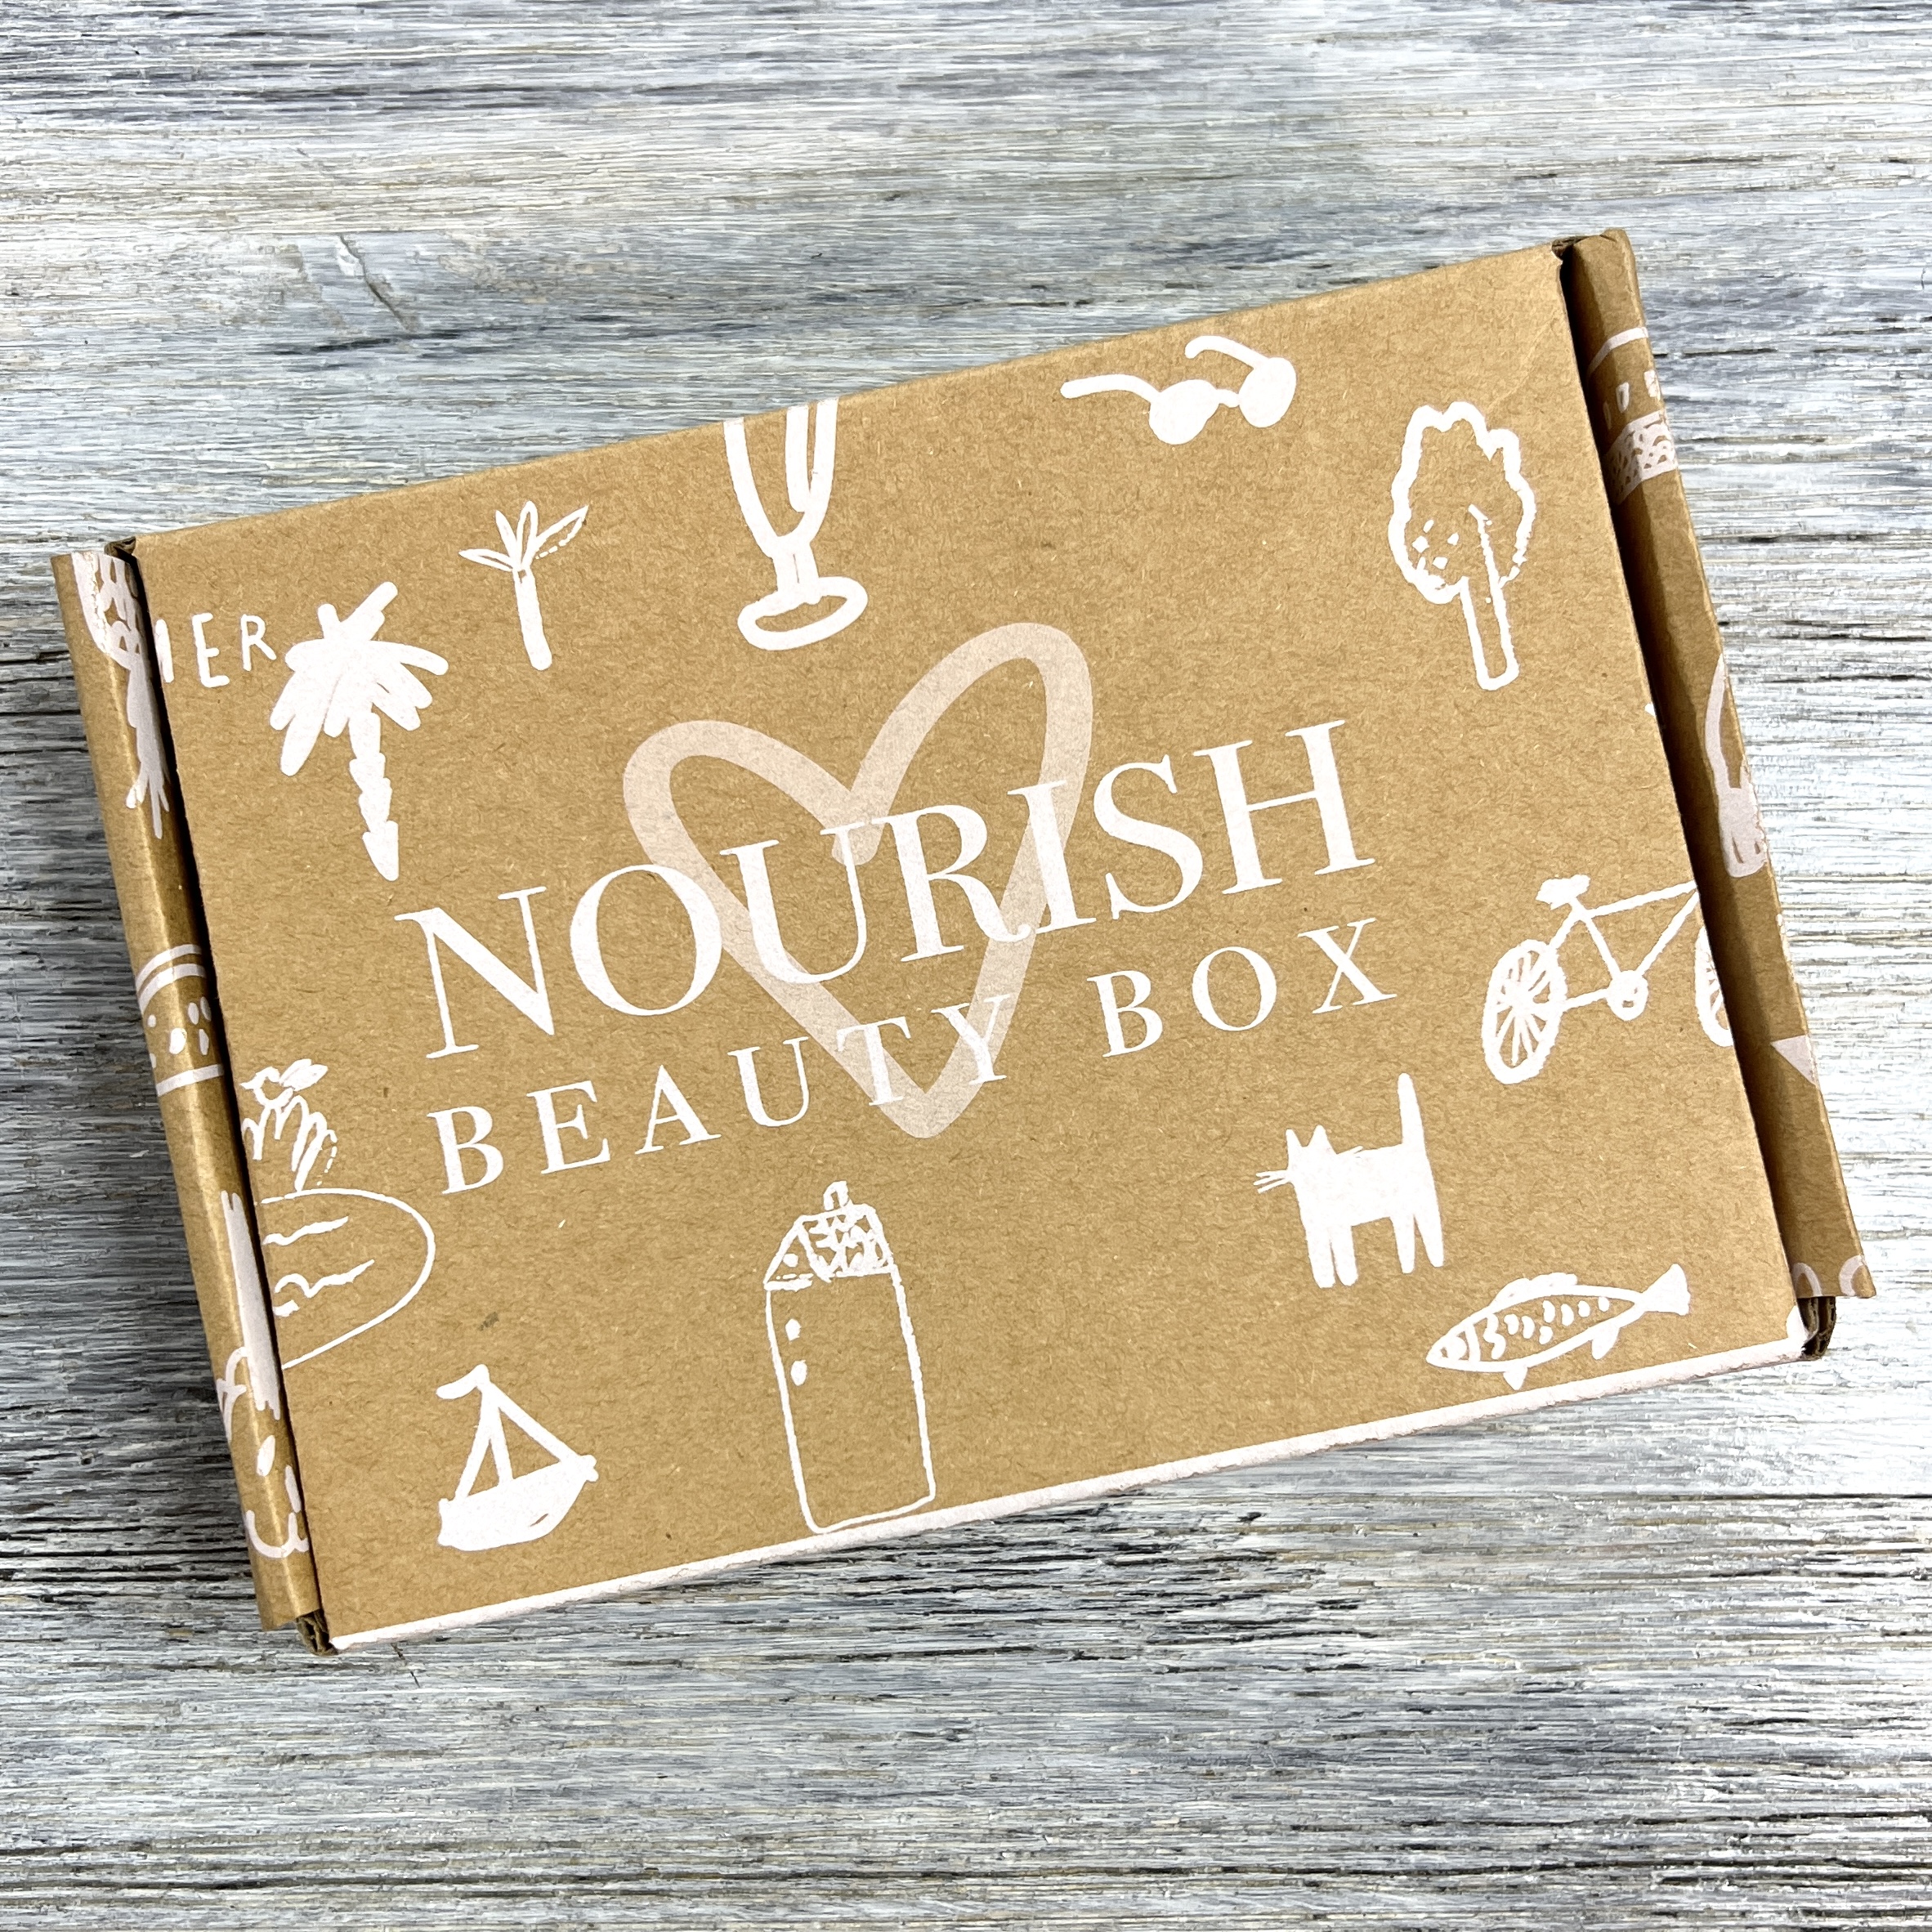 Box for Nourish Beauty Box February 2022